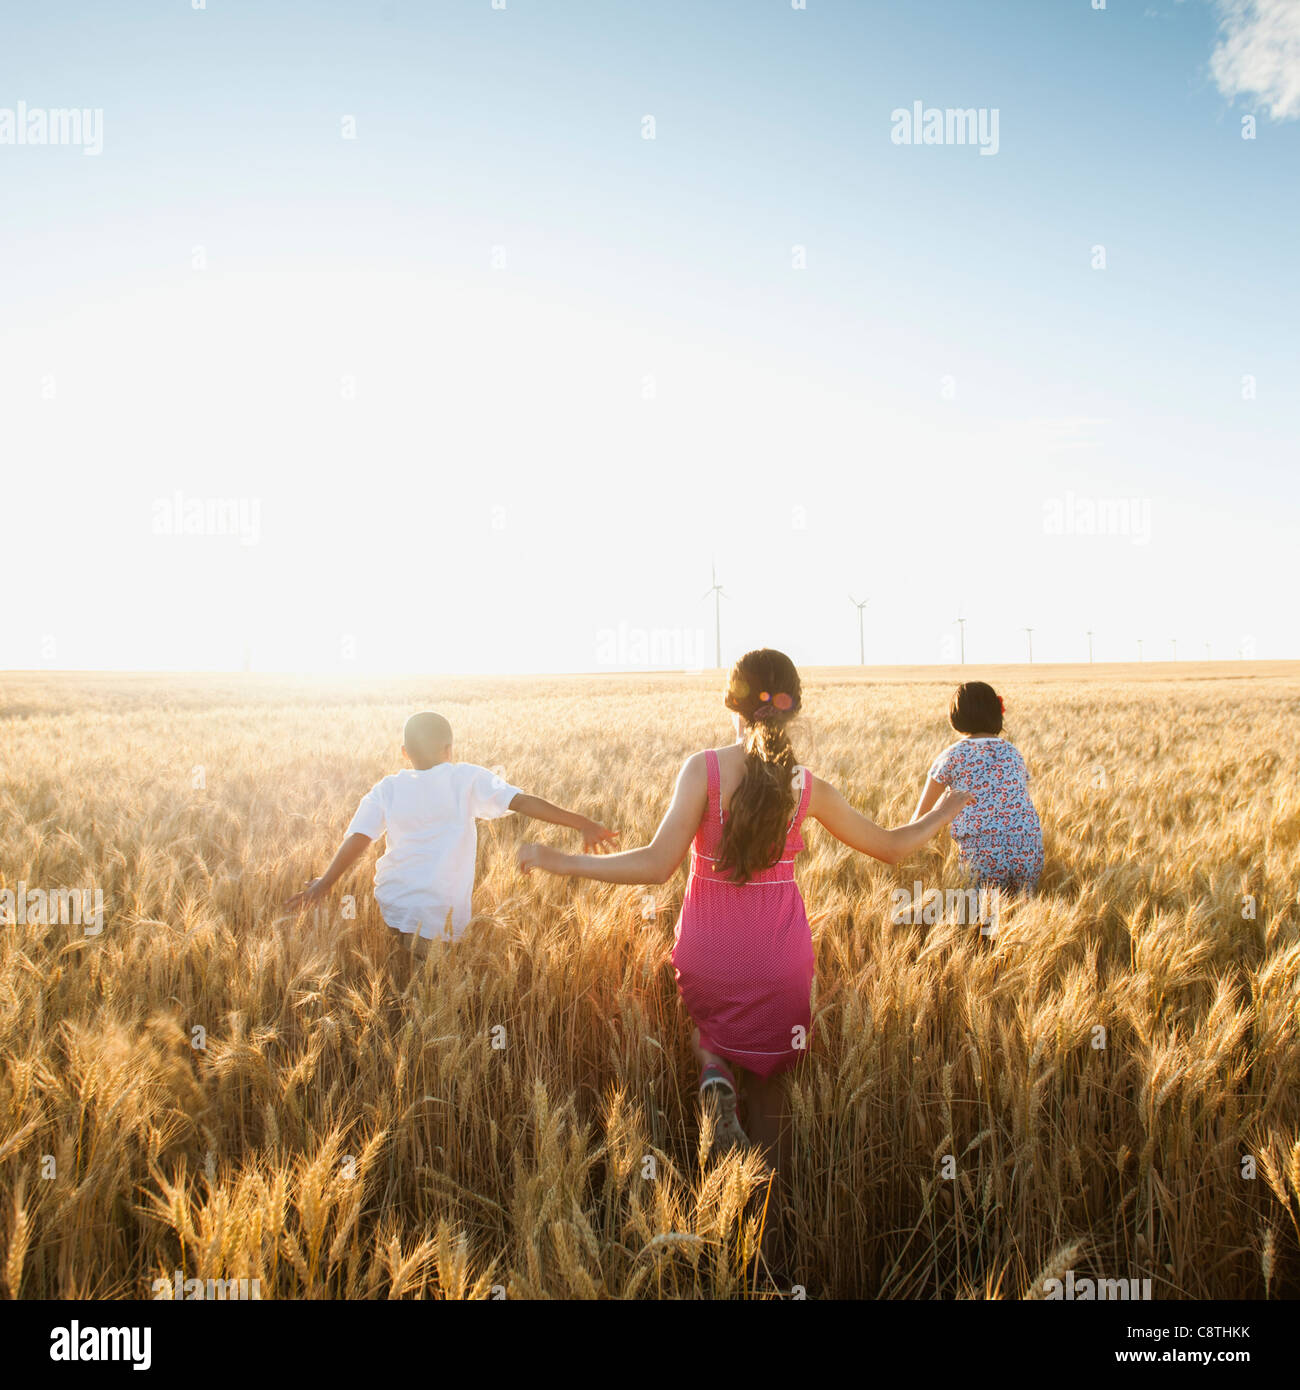 USA, Ohio, Wasco, filles et garçon marcher si le champ de blé Banque D'Images